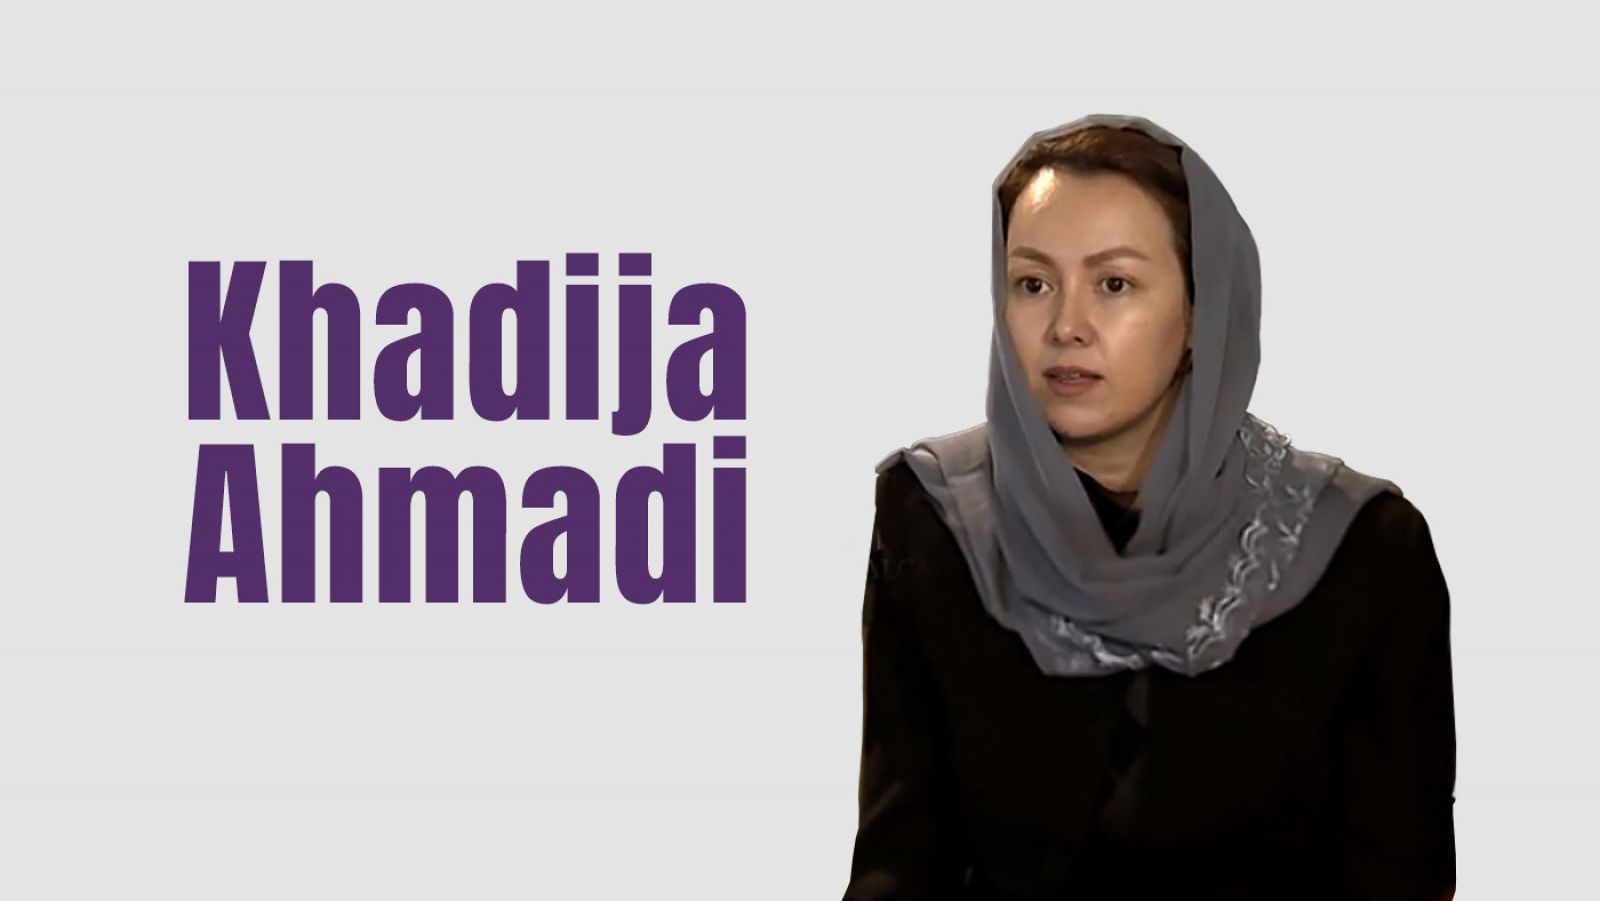 Khadija Ahmadi